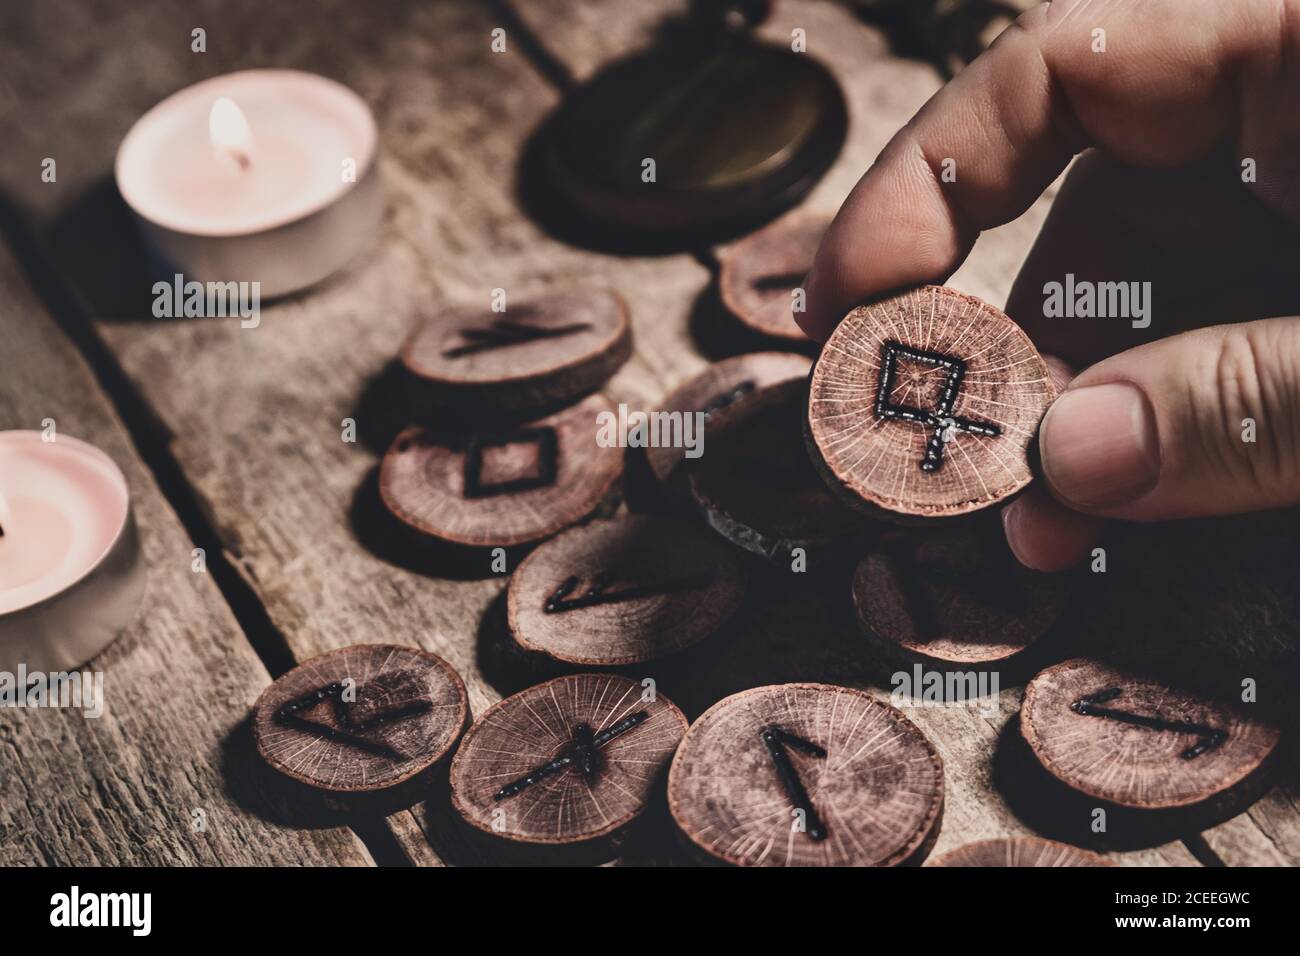 Mano sosteniendo el futhark del runesor de madera, esotérico y la espiritualidad, leyendo y fortuneteller, detalles Foto de stock